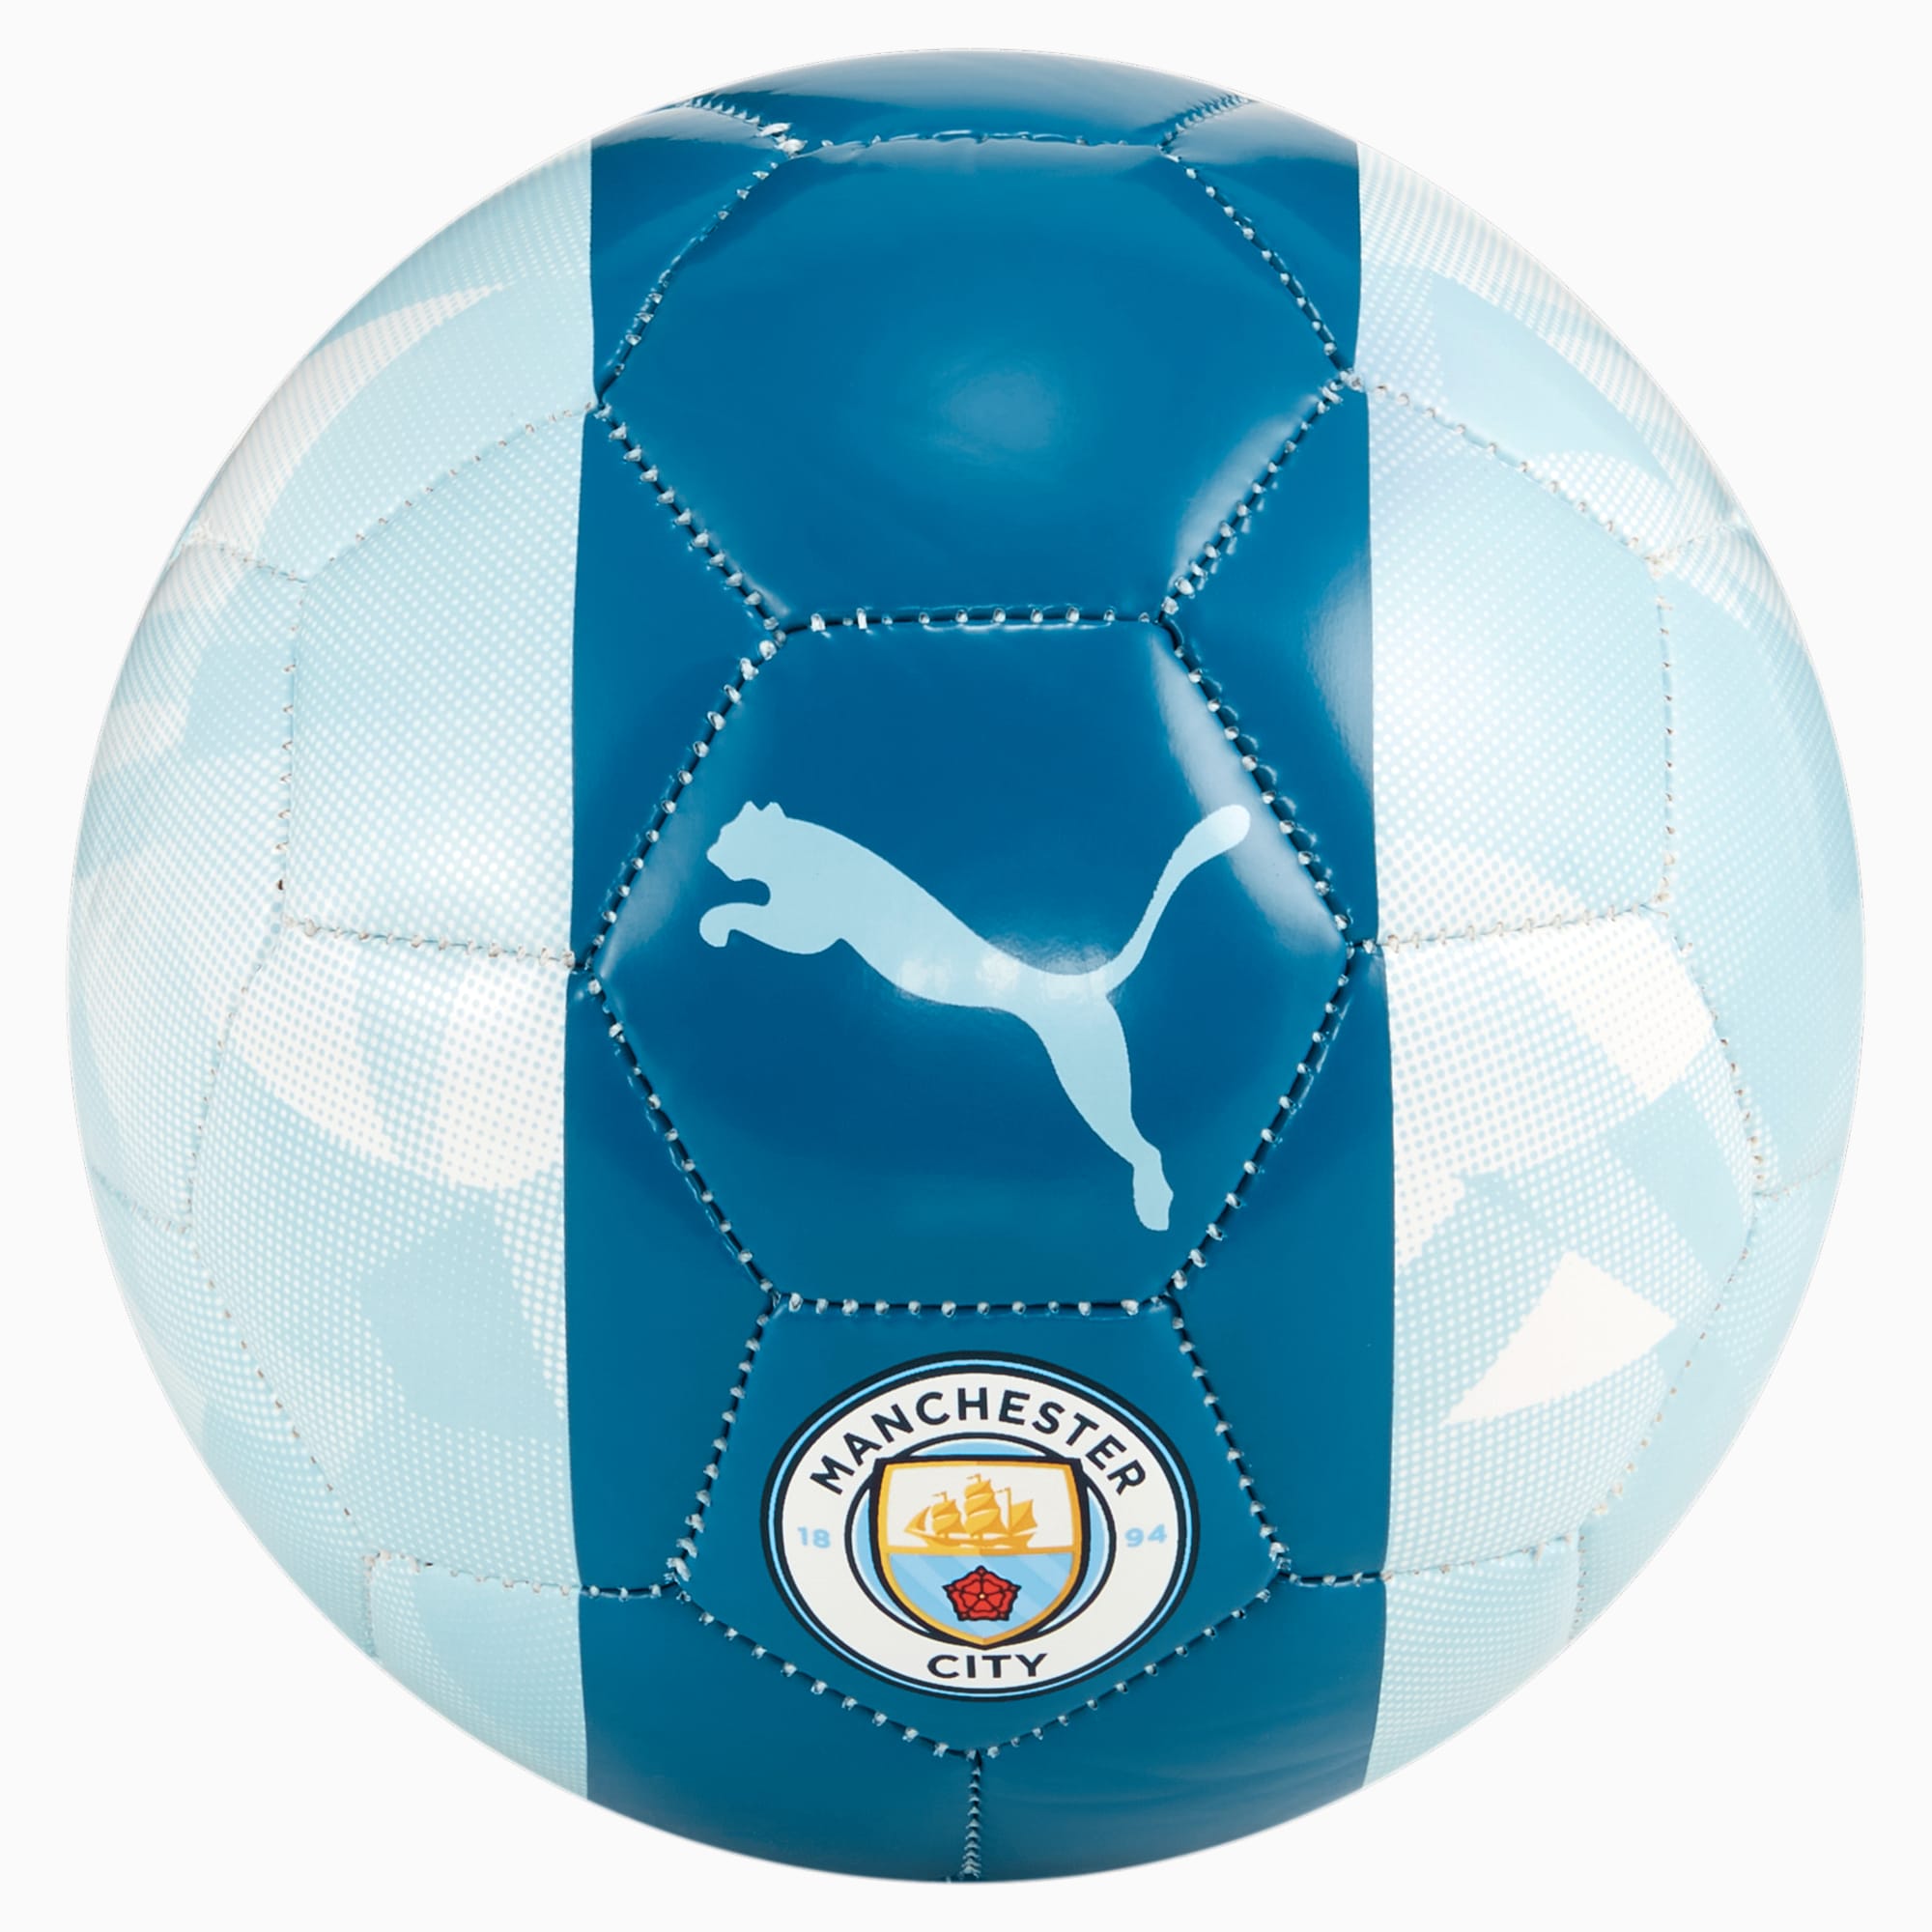 PUMA Minibalón De Fútbol Del Manchester City Ftblcore, Plateado/Azul